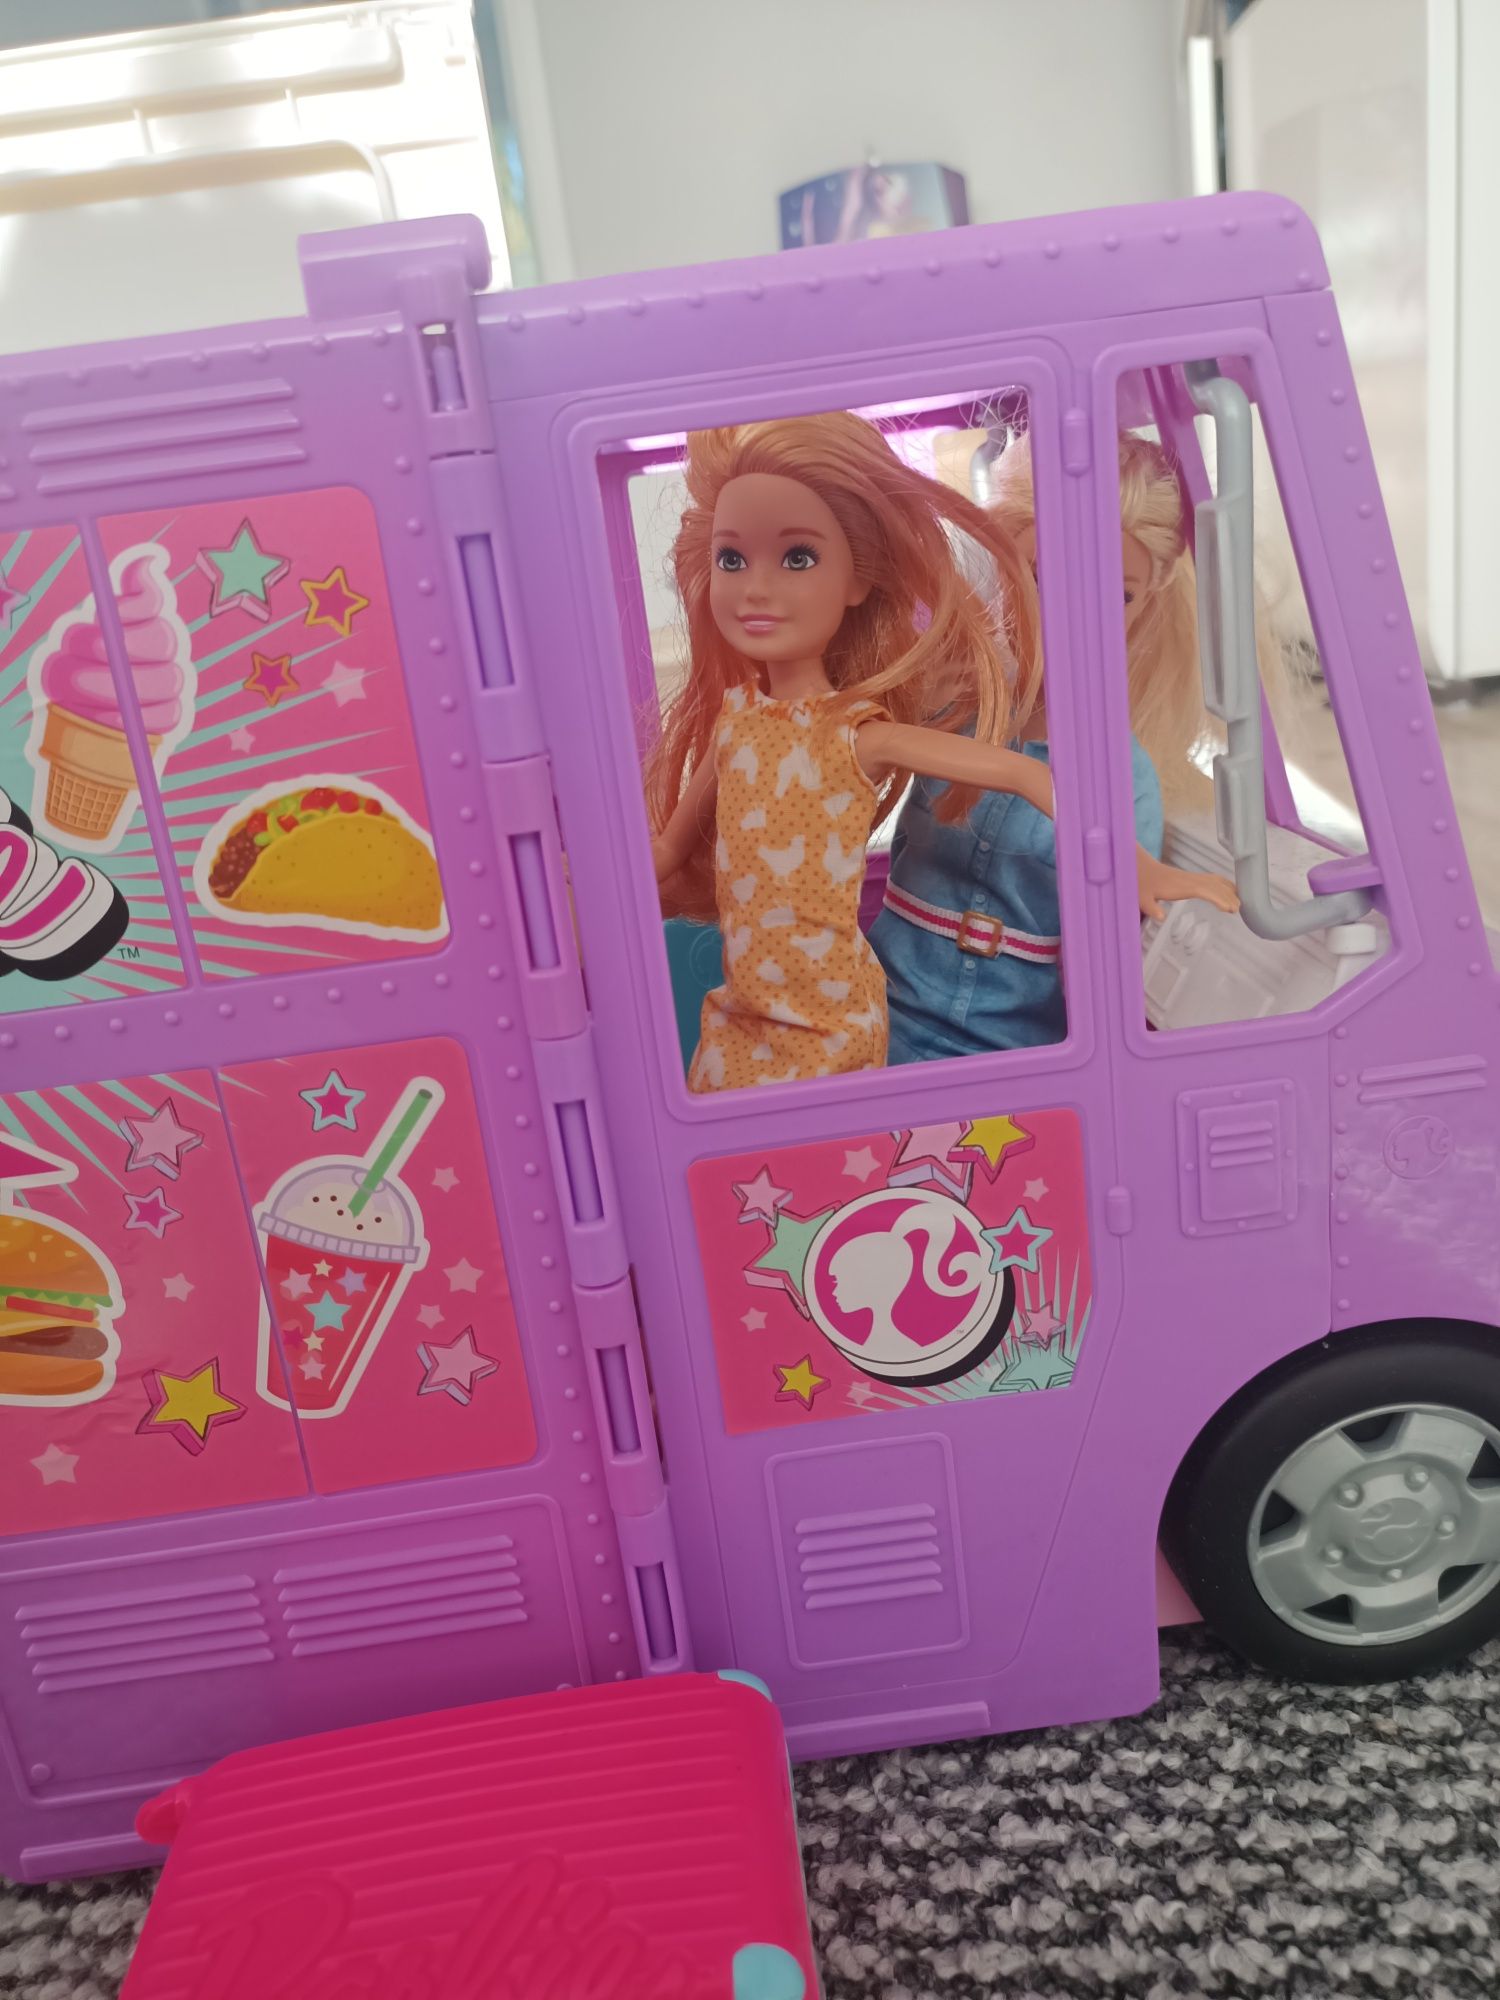 Barbie, Foodtruck, zestaw do zabawy z lalkami